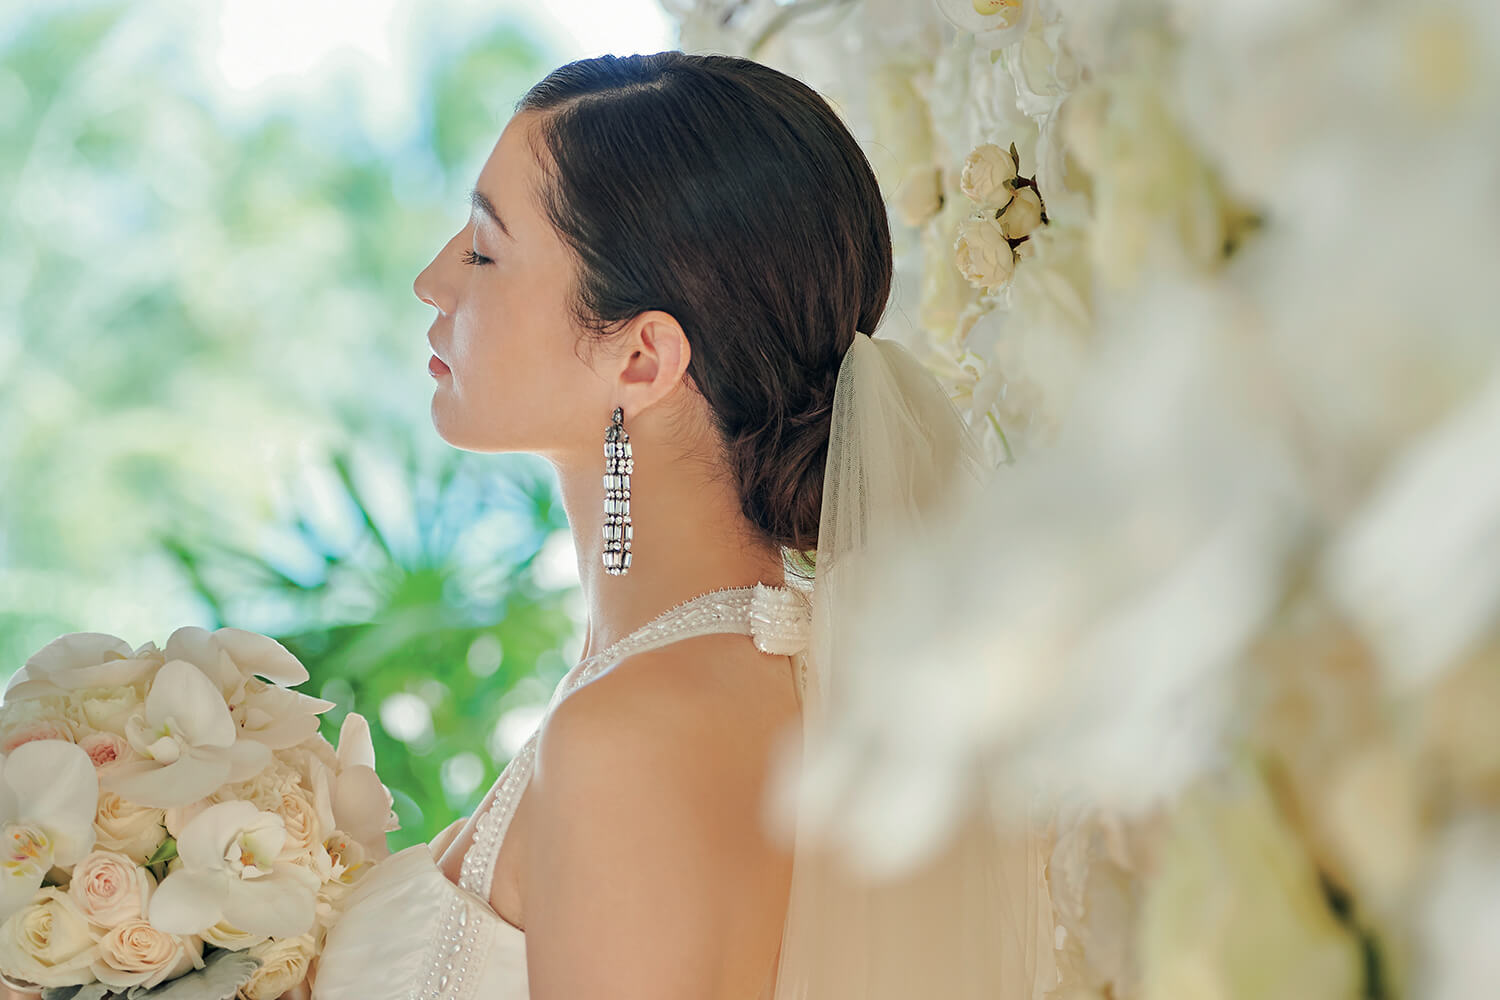 リゾ婚花嫁 きれい 応援プロジェクト リゾ婚 海外挙式 国内結婚式なら ワタベウェディング